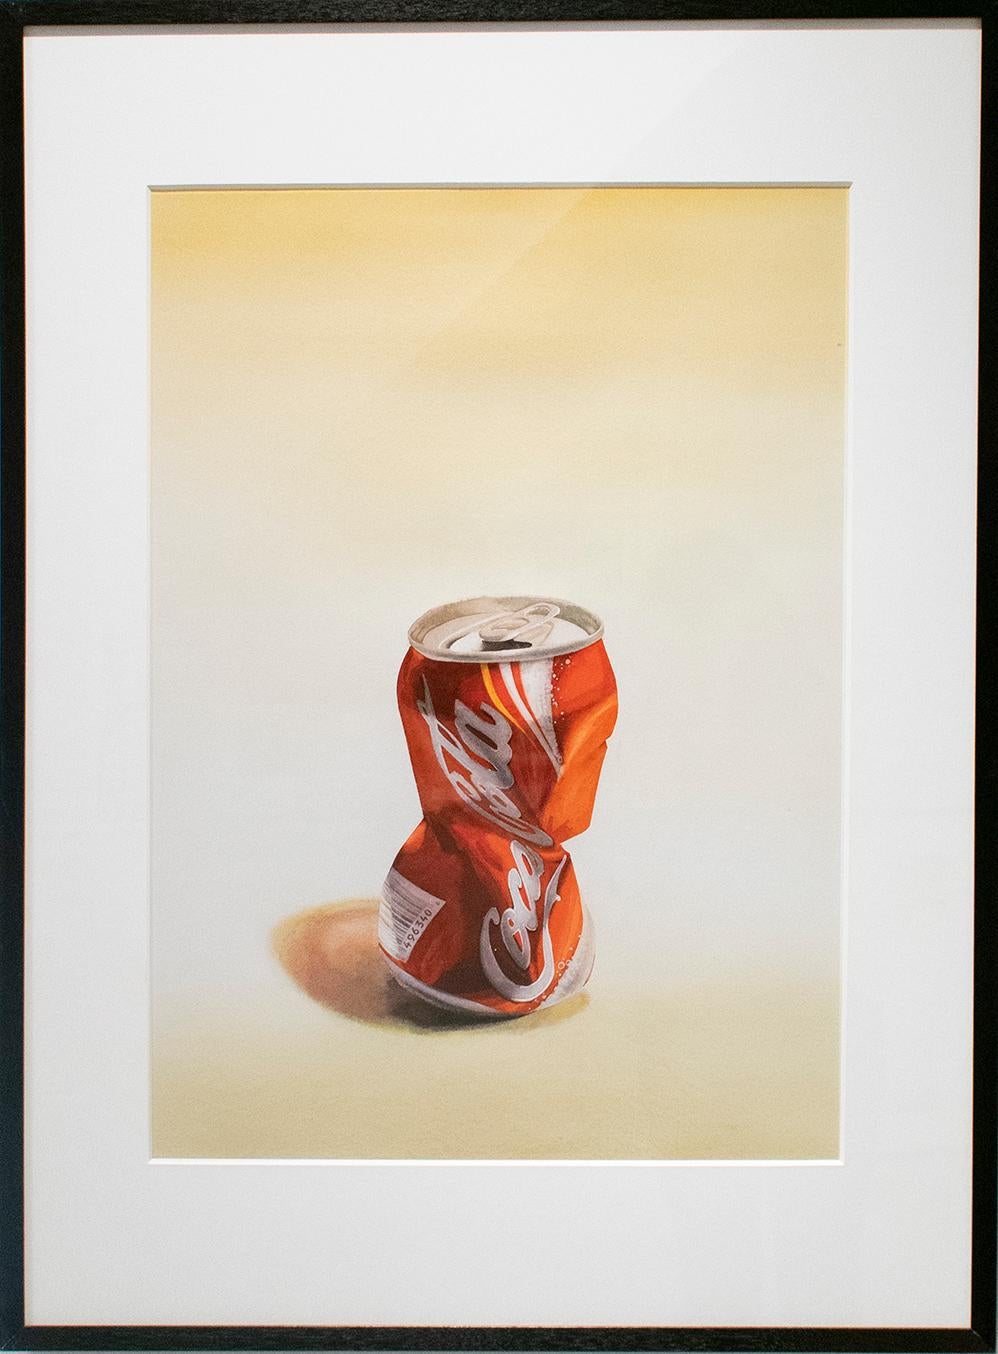 Coca Cola (fotorealistisches Aquarell-Pop-Art-Gemälde einer zerkleinerten roten Sodadose)